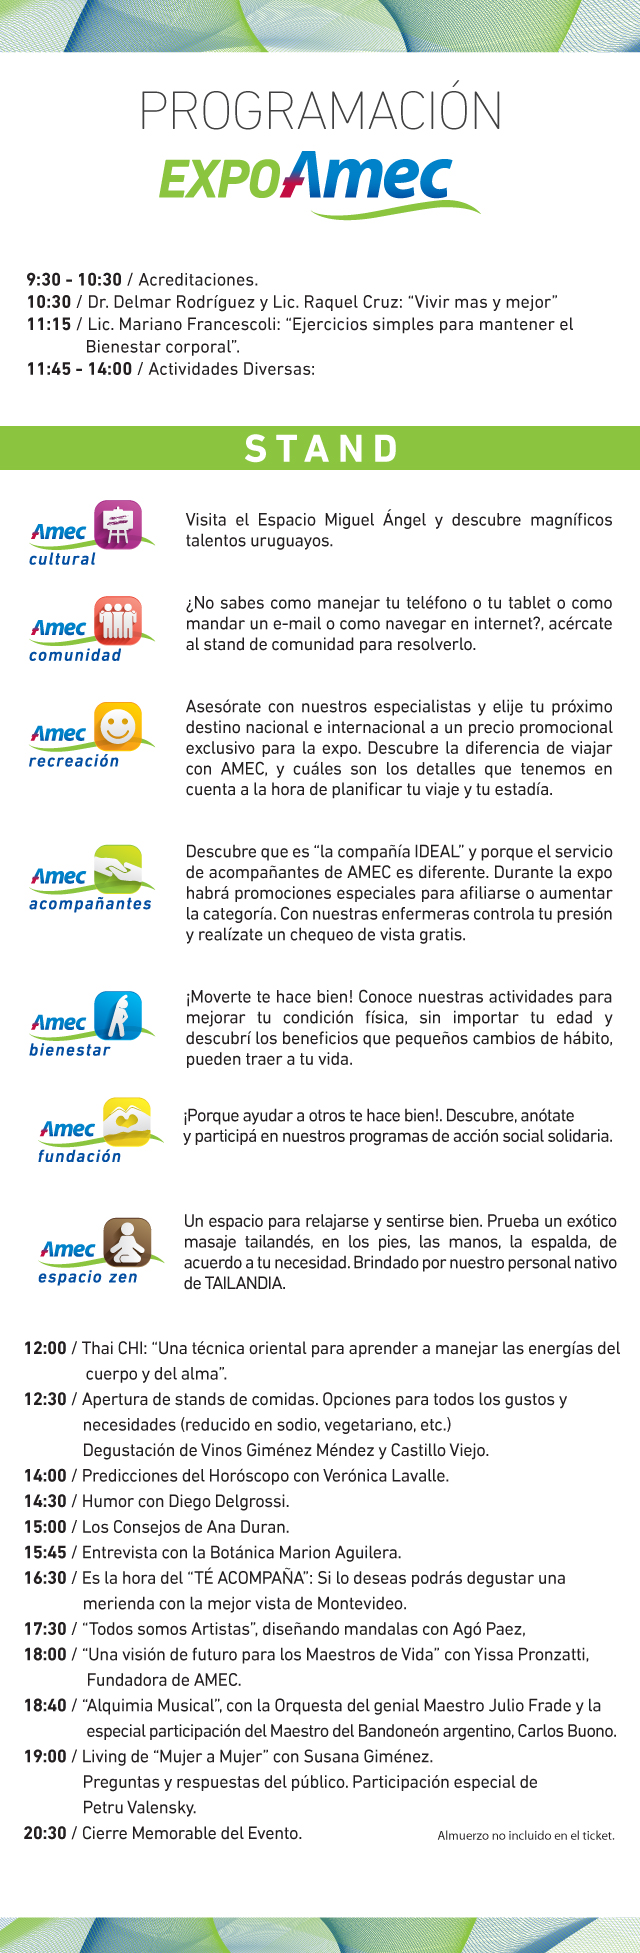 Programa Expo Amec 2017